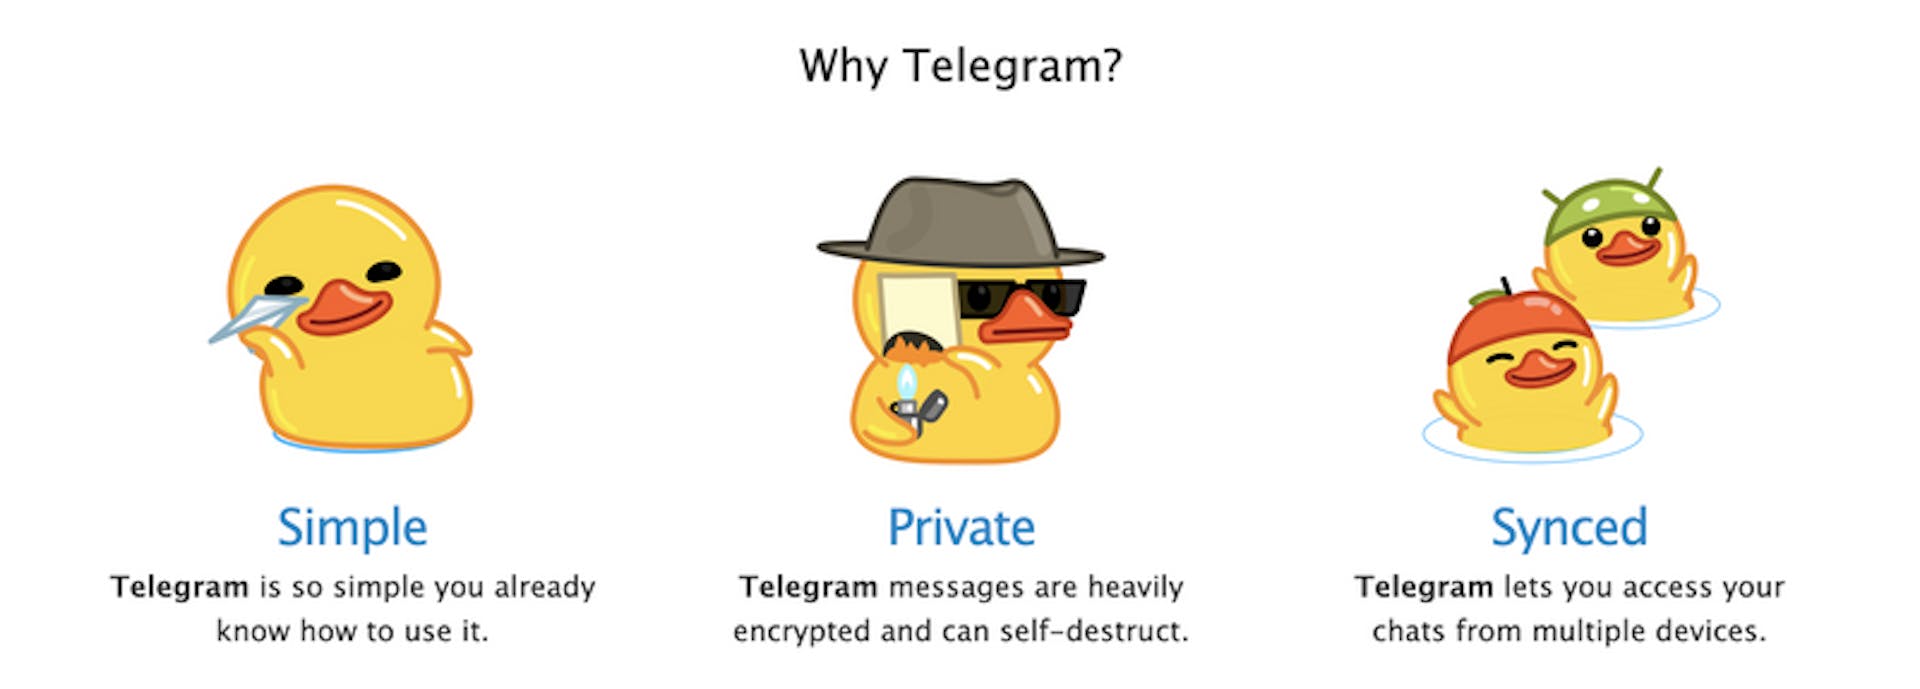 ユーザーに提供するプライバシーを宣伝する Telegram の Web サイトからスクリーンショットを取得します。 Cezary は、彼が発見した会話のいくつかの詳細な例を Telegram に連絡しましたが、会社は彼の質問に応答しませんでした.しかし、彼が連絡を取った直後に、彼が質問したチャンネルのうち 10 チャンネルがダウンし、Telegram の利用規約に違反したというメッセージが投稿されました。クレジット: Telegram の ProPublica スクリーングラブ